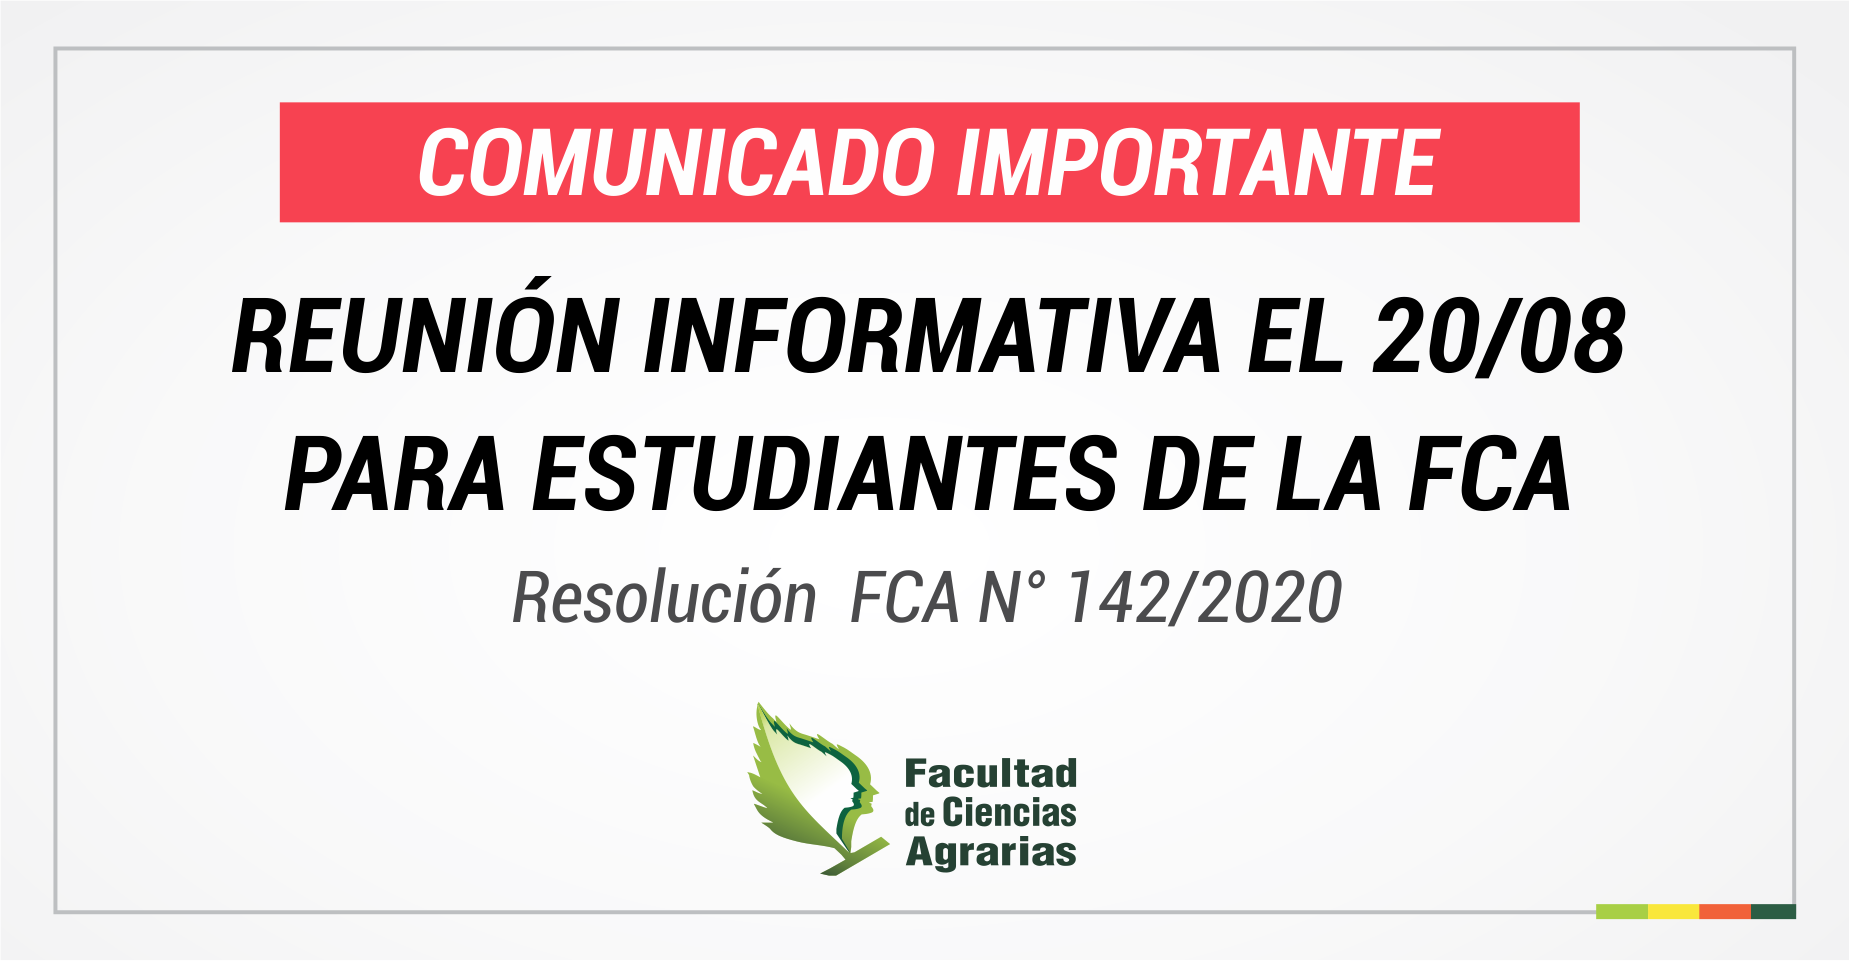 REUNIÓN INFORMATIVA PARA ESTUDIANTES DE LA FCA | RES. FCA N° 142/2020